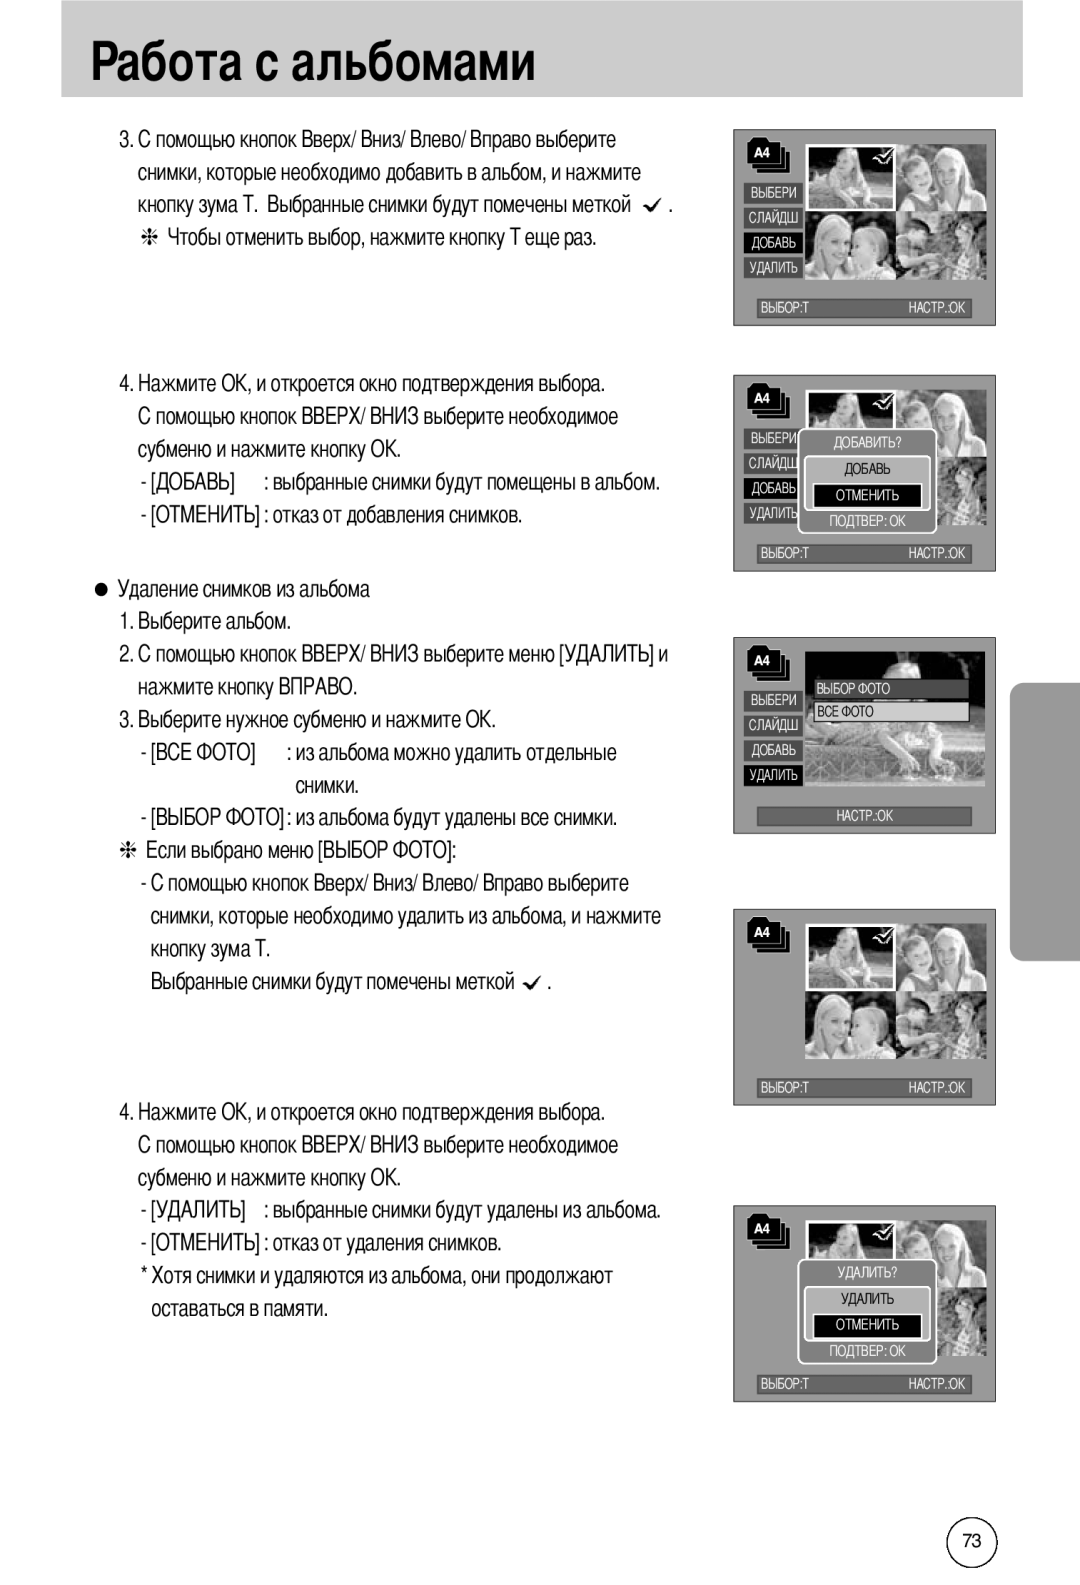 Samsung EC-I50ZZSBA/GB manual снимки, которые необходимо добавить в альбом, и нажмите кнопку зума, абота с альбомами 